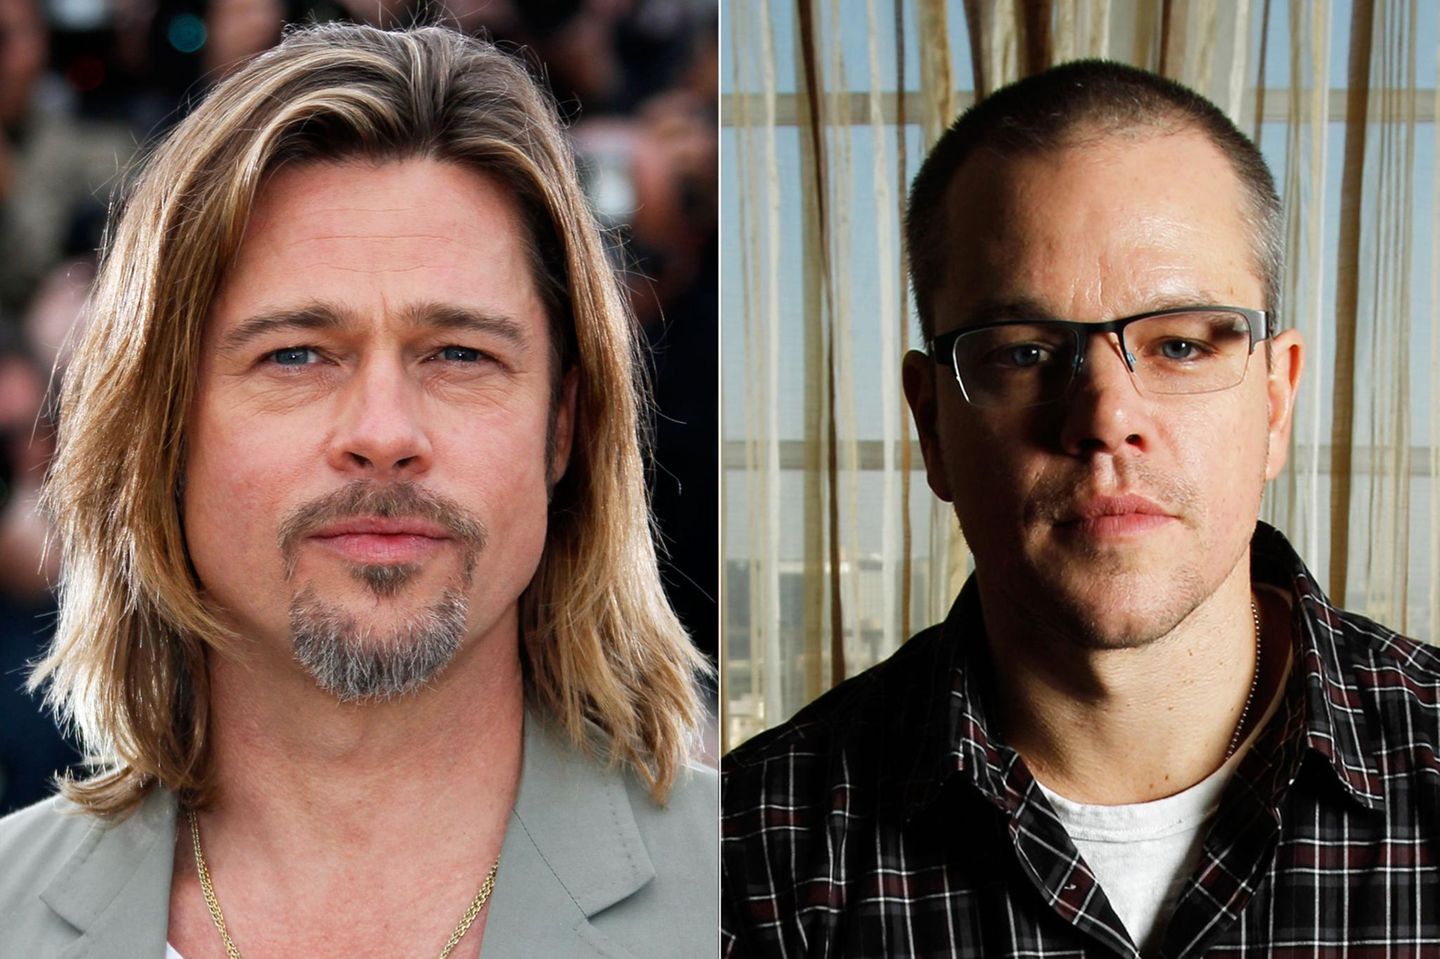 In letzter Minute stieg Brad Pitt bei "The Bourne Identity" aus und machte somit Platz für Matt Damon.